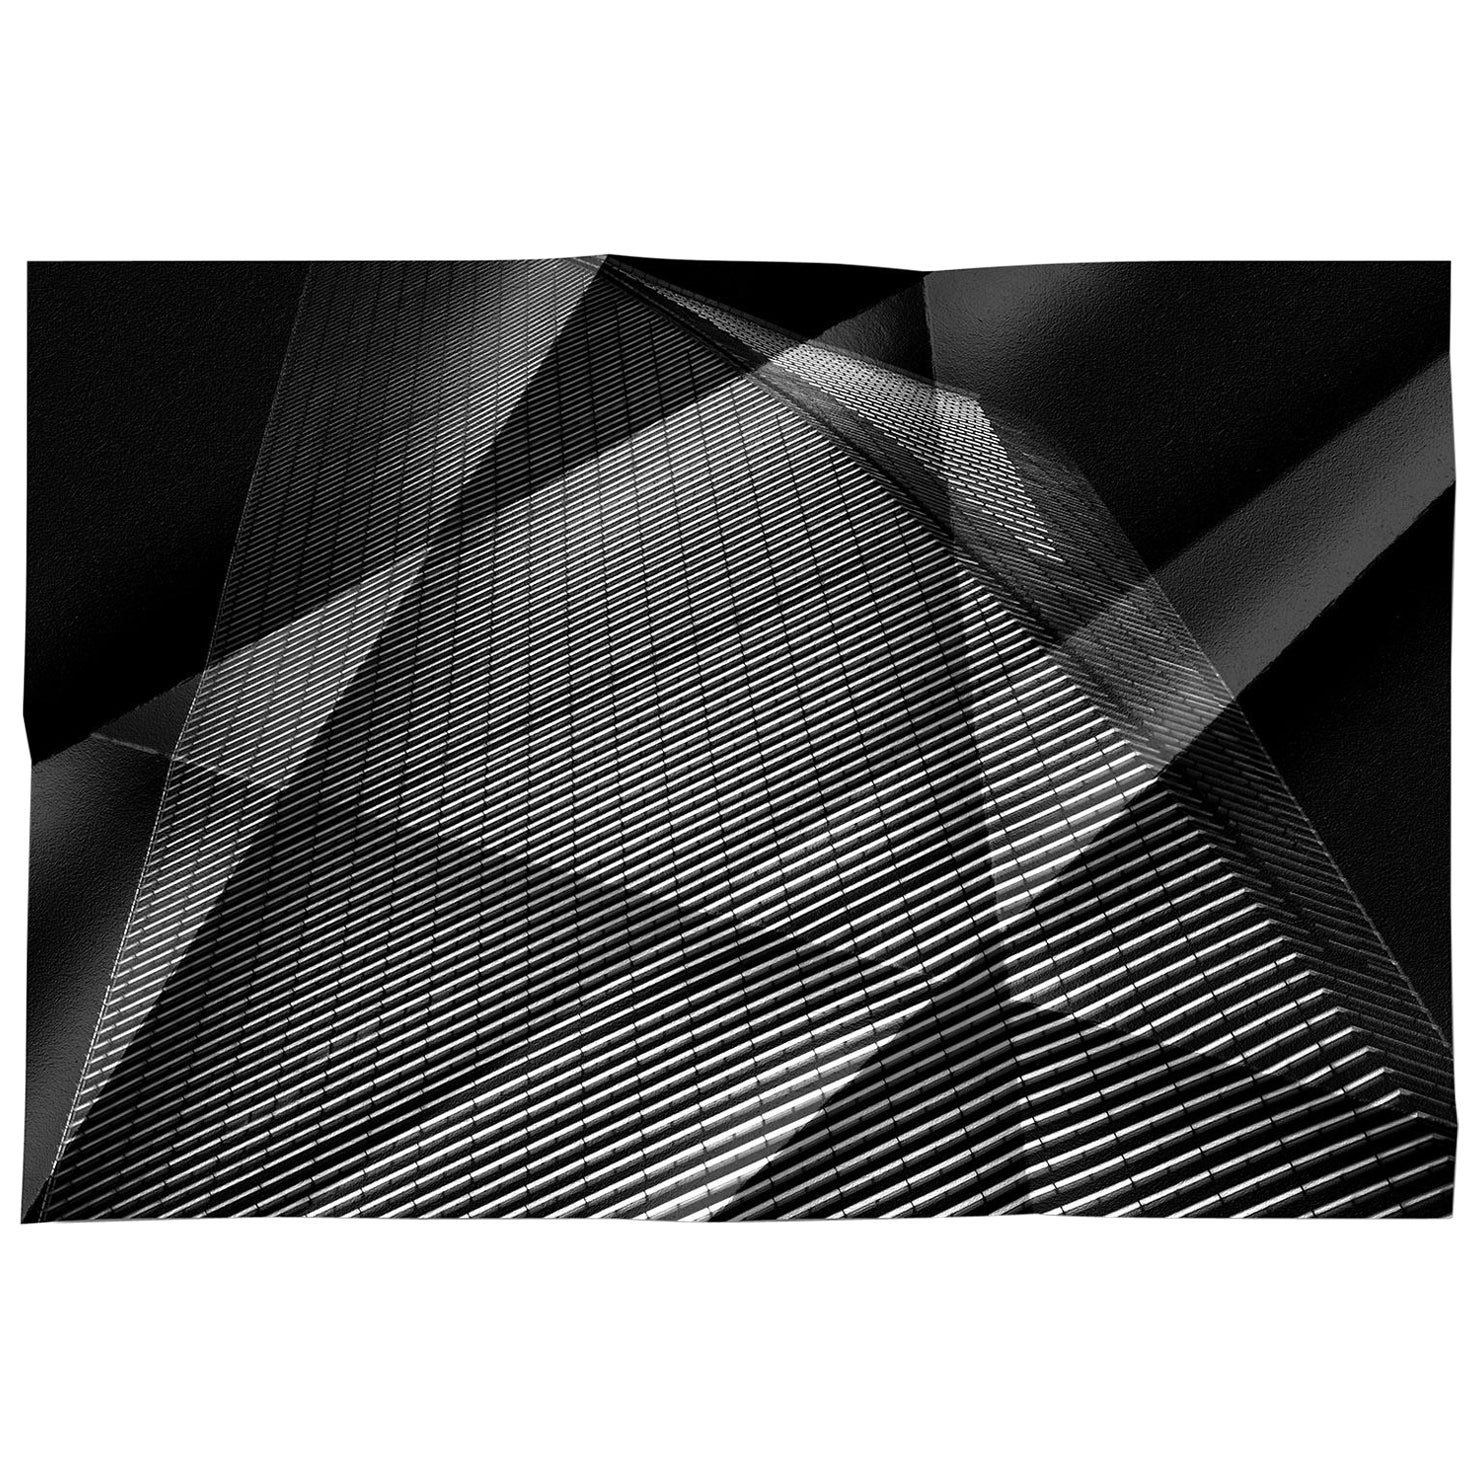 Black and White Photograph Michael Banks - Architectonique 3 tirages abstraits en édition limitée, grand format contemporain, signés